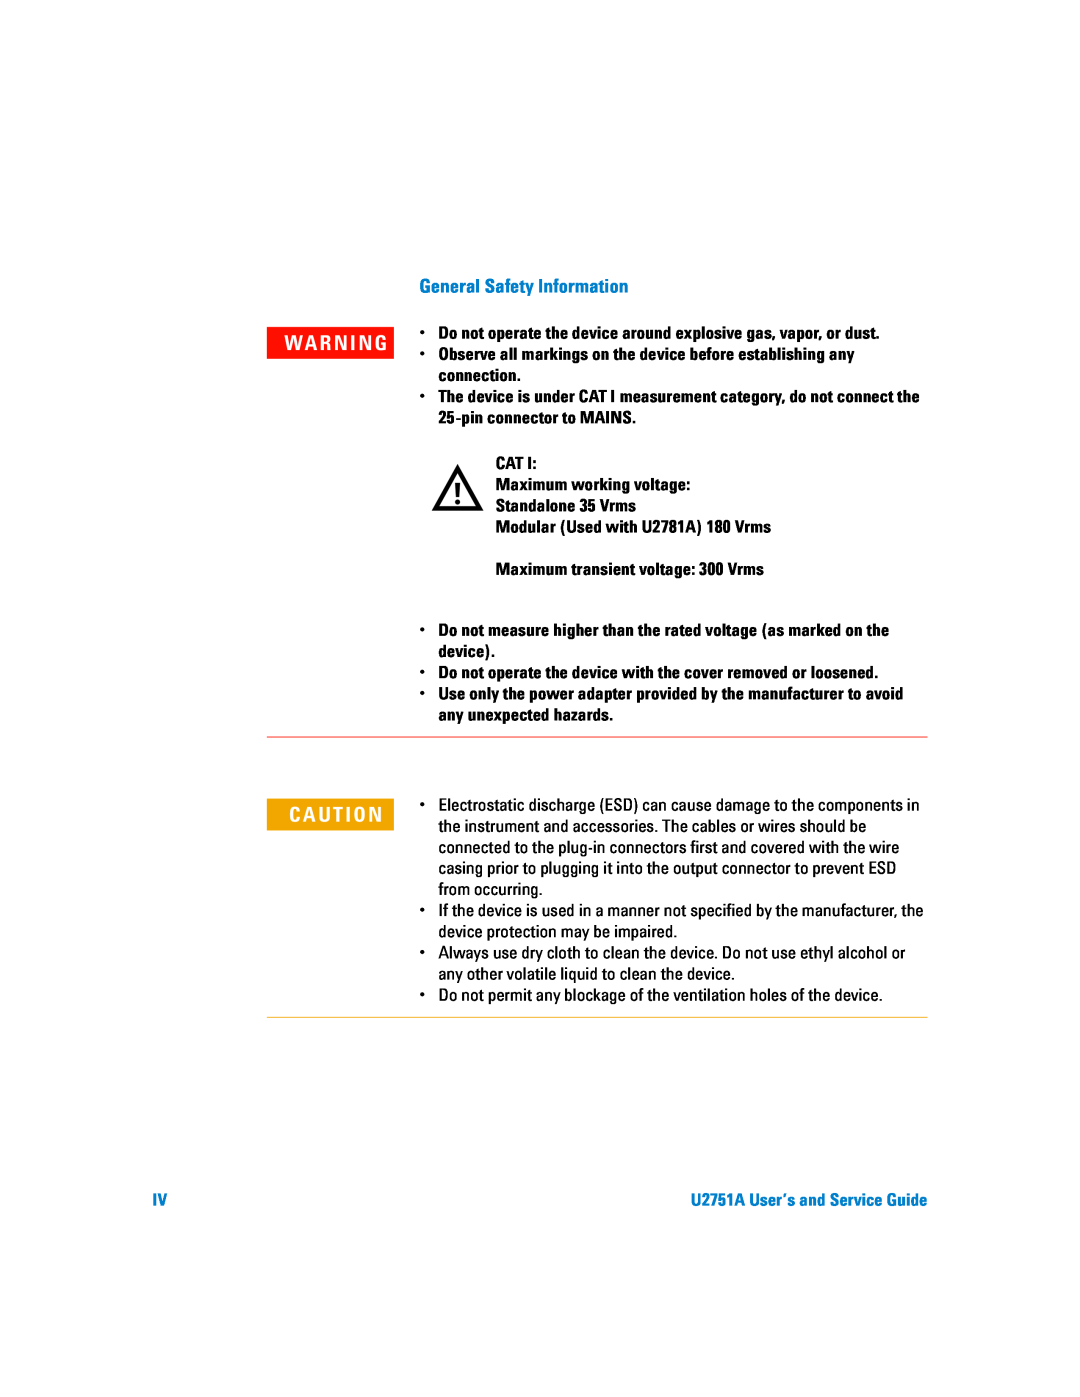 Agilent Technologies U2751A manual General Safety Information, Wa R N I N G 